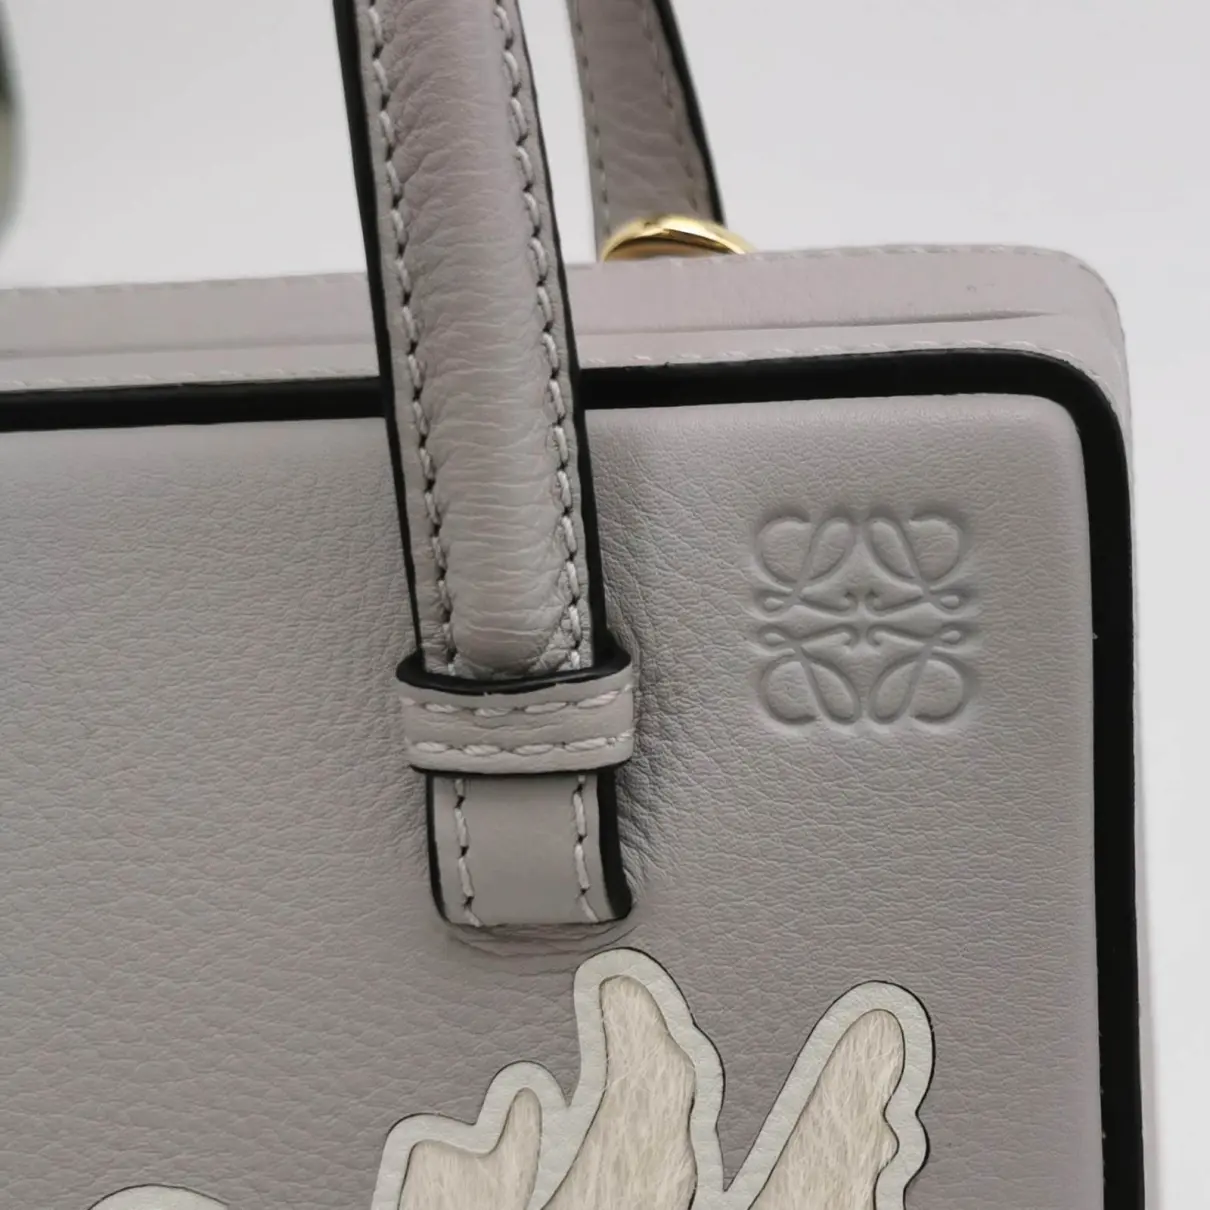 Postal leather handbag Loewe